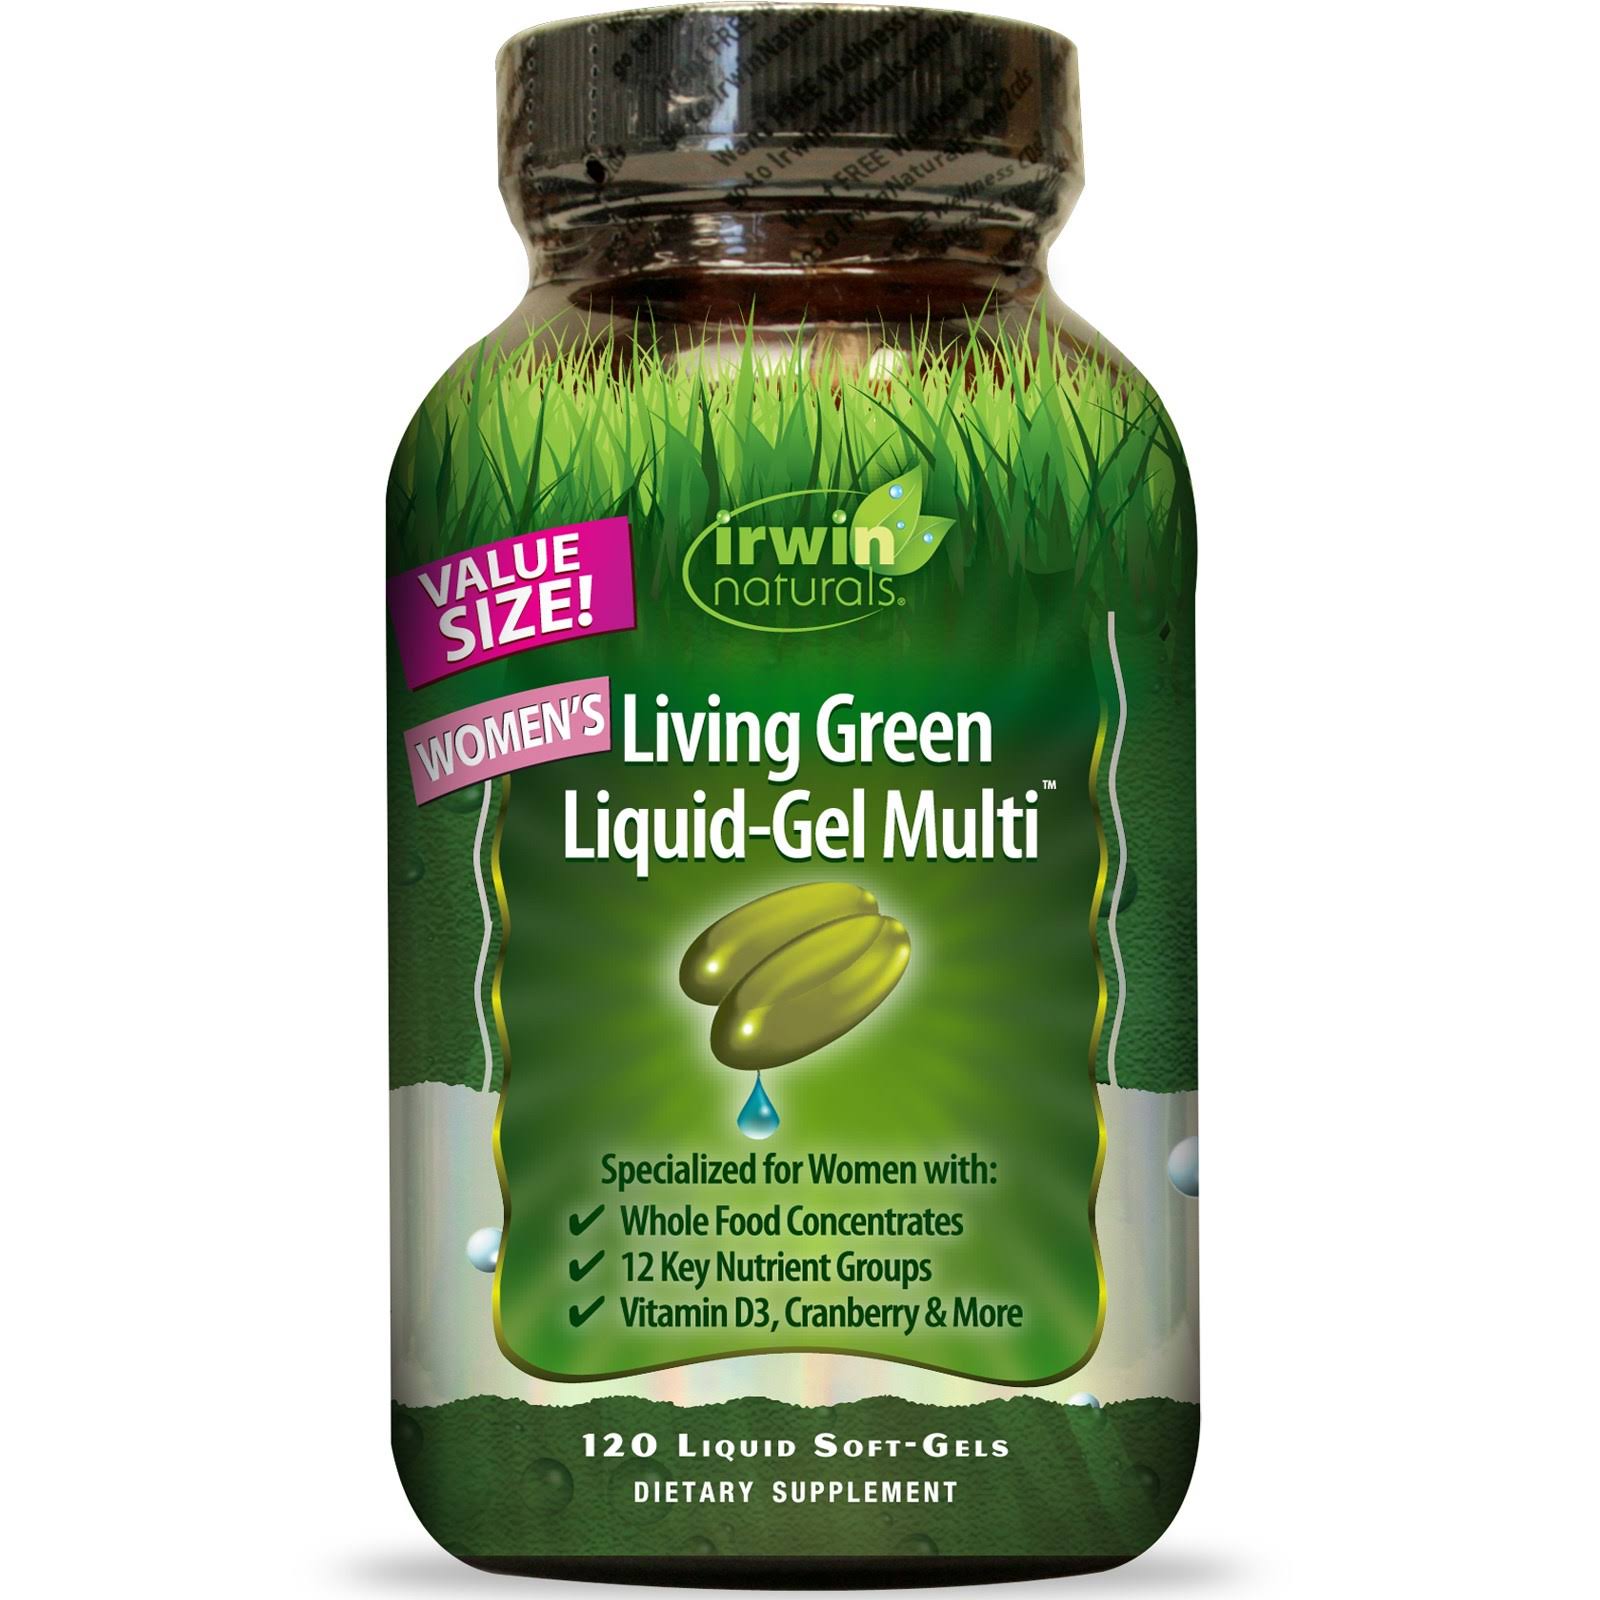 Irwin Naturals Living Green Multi Liquid-Gel - 120 Liquid Softgels